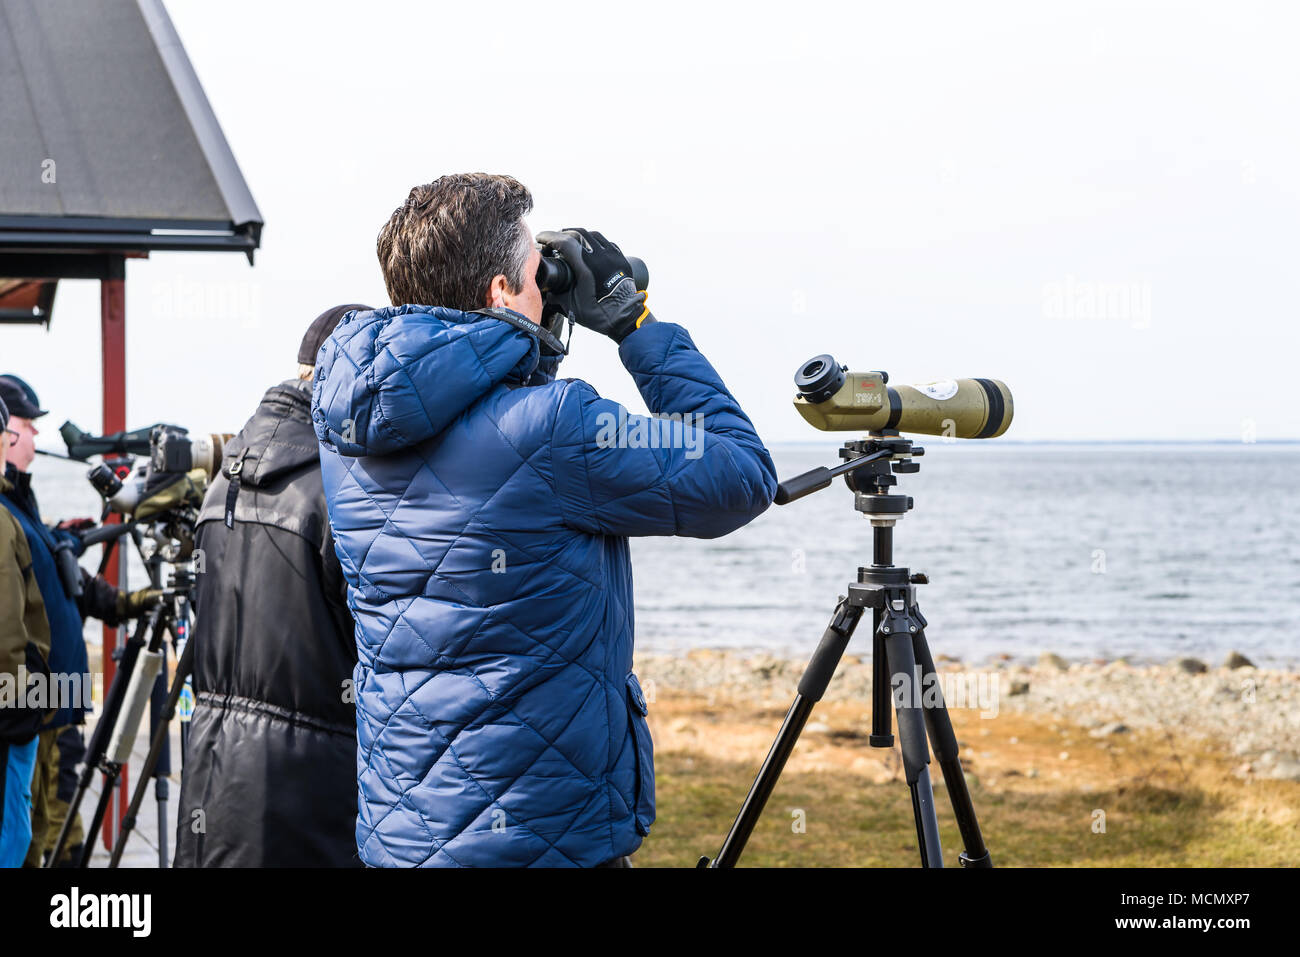 Stora ror, Schweden - 7 April, 2018: Dokumentation des täglichen Lebens und der Umwelt. Männliche bird watcher suchen für Zugvögel im Frühjahr usi Stockfoto